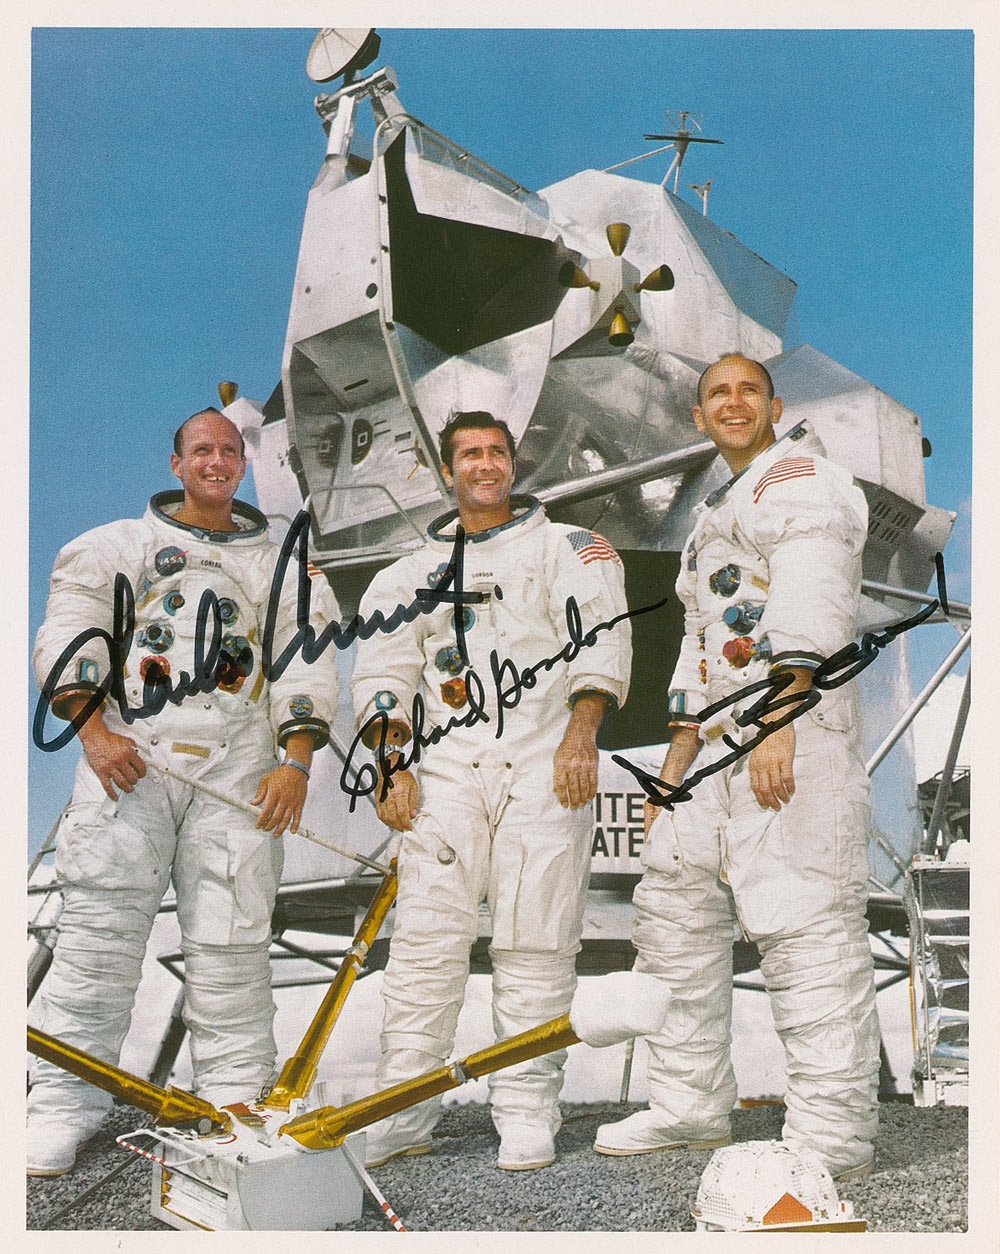 Lot #411 Apollo 12